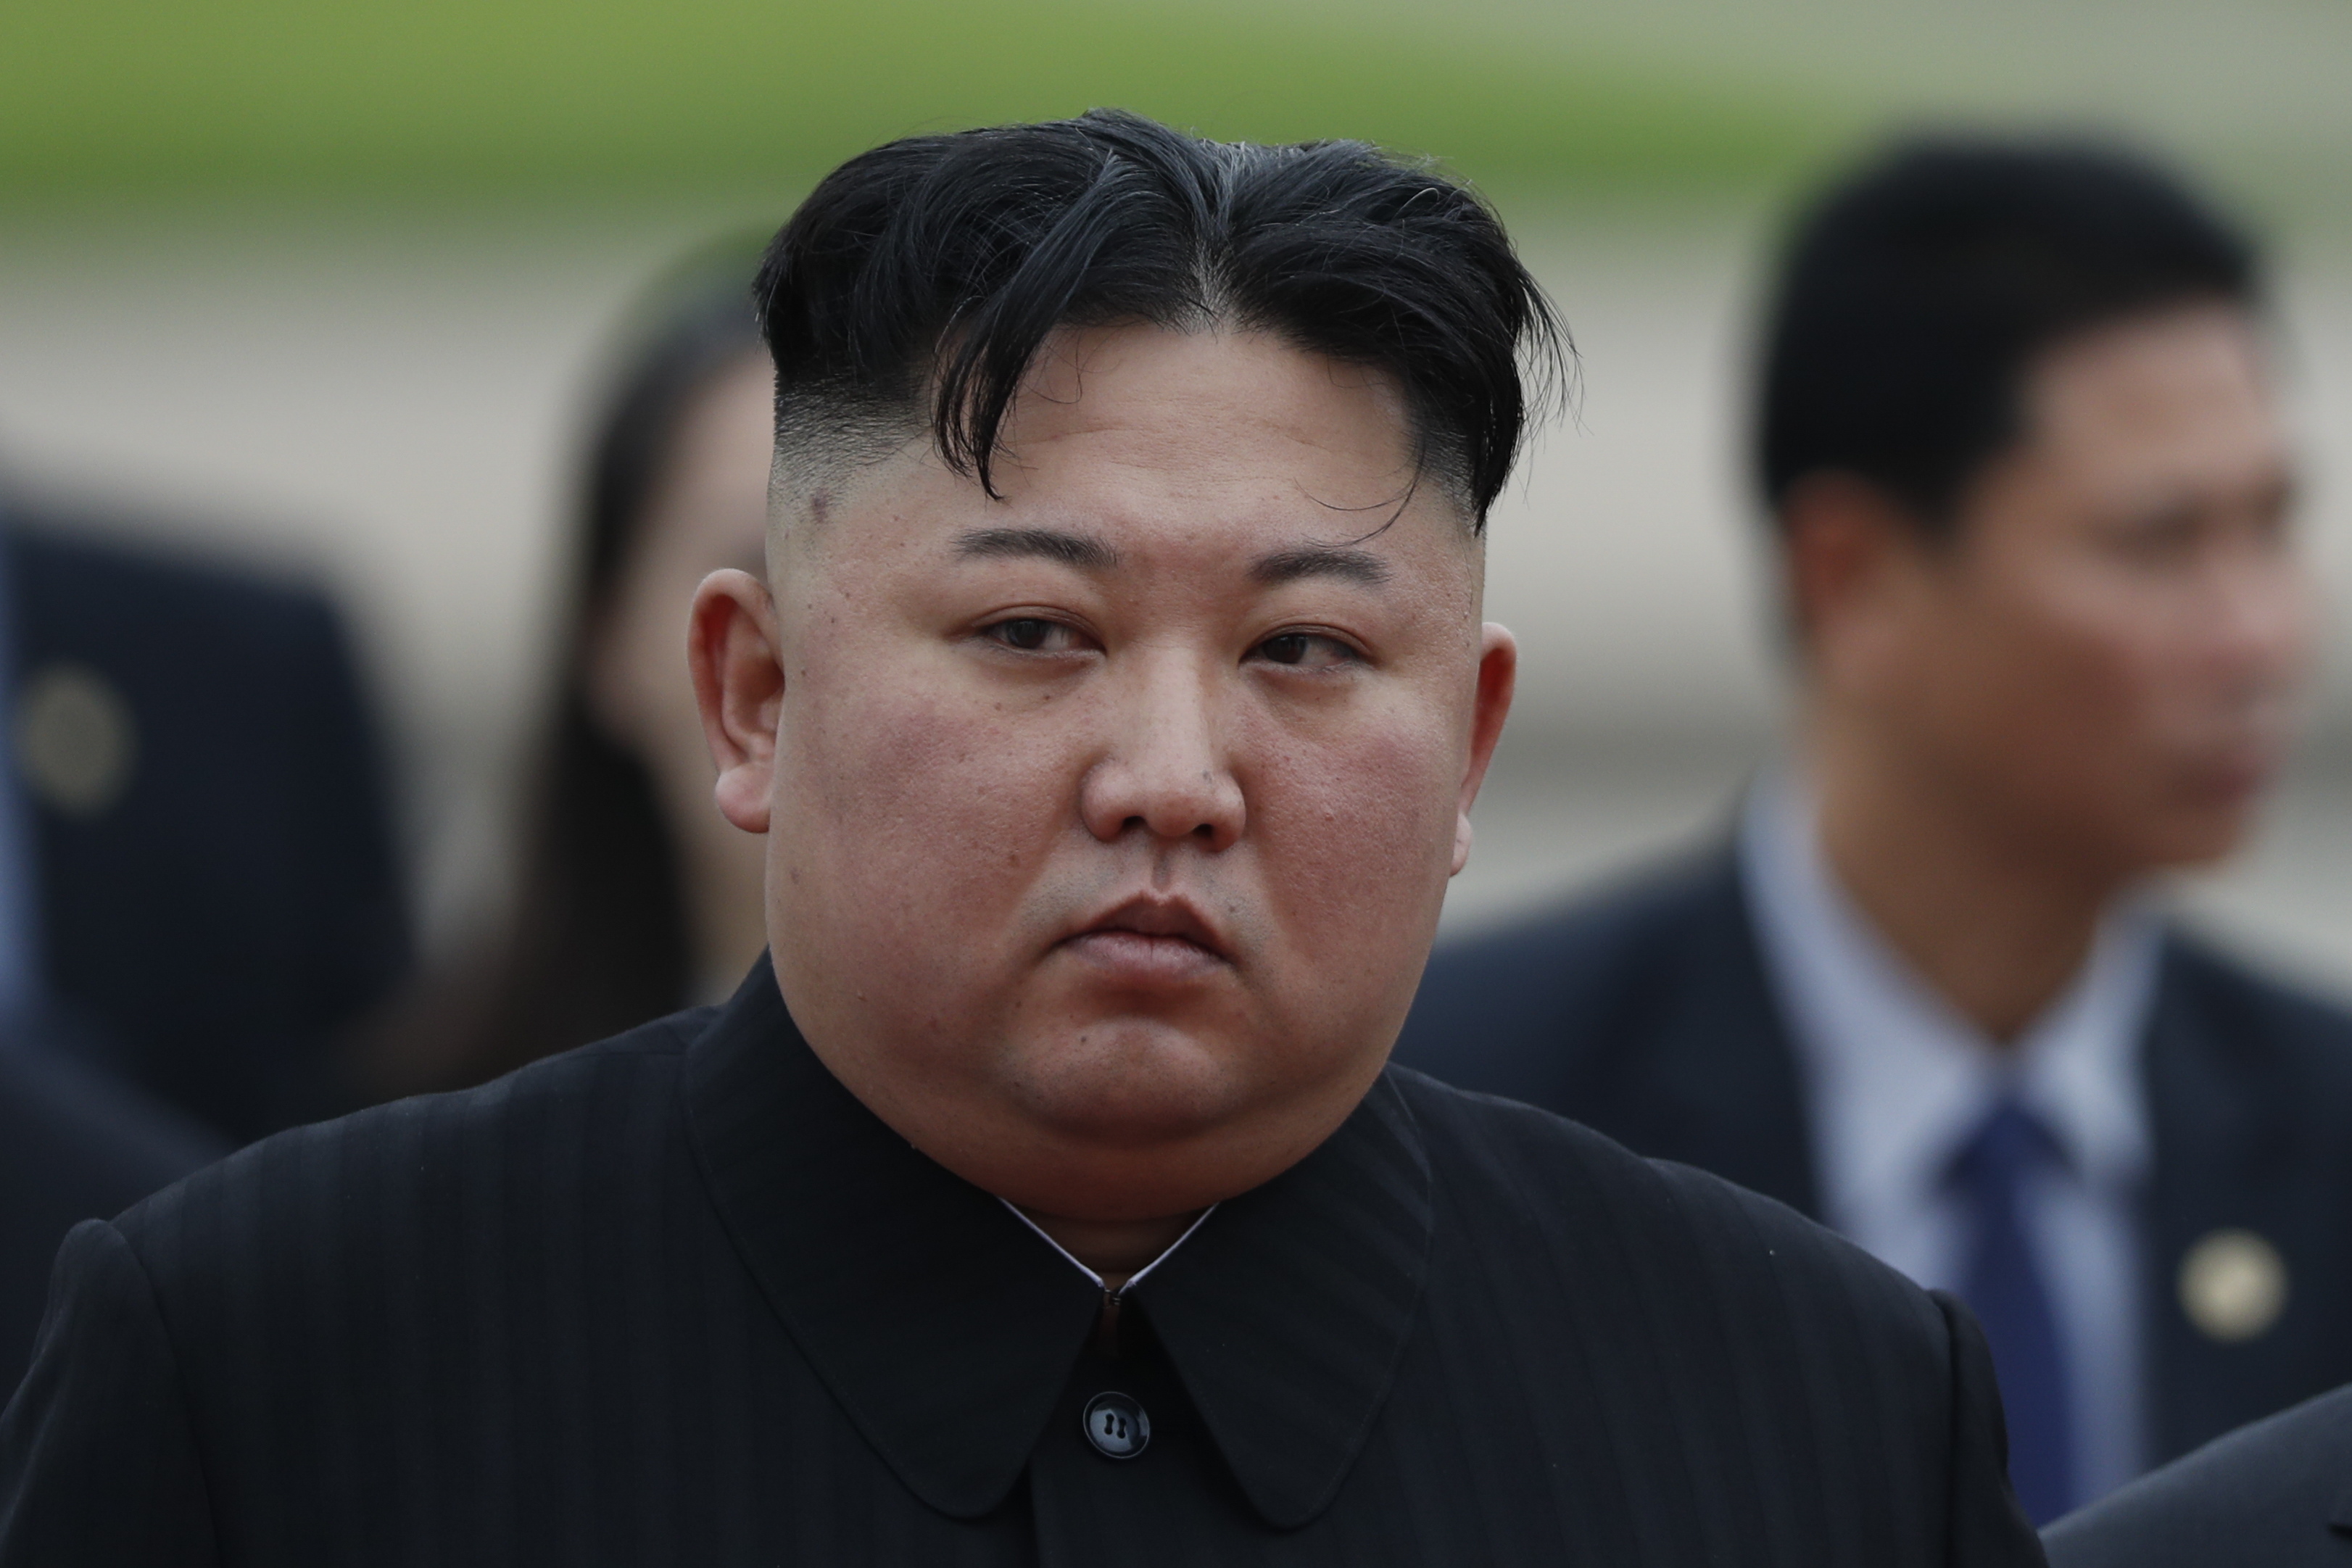 Corea del Norte estaría encarando una situación alimentaria “difícil”, aseguran desde el Sur